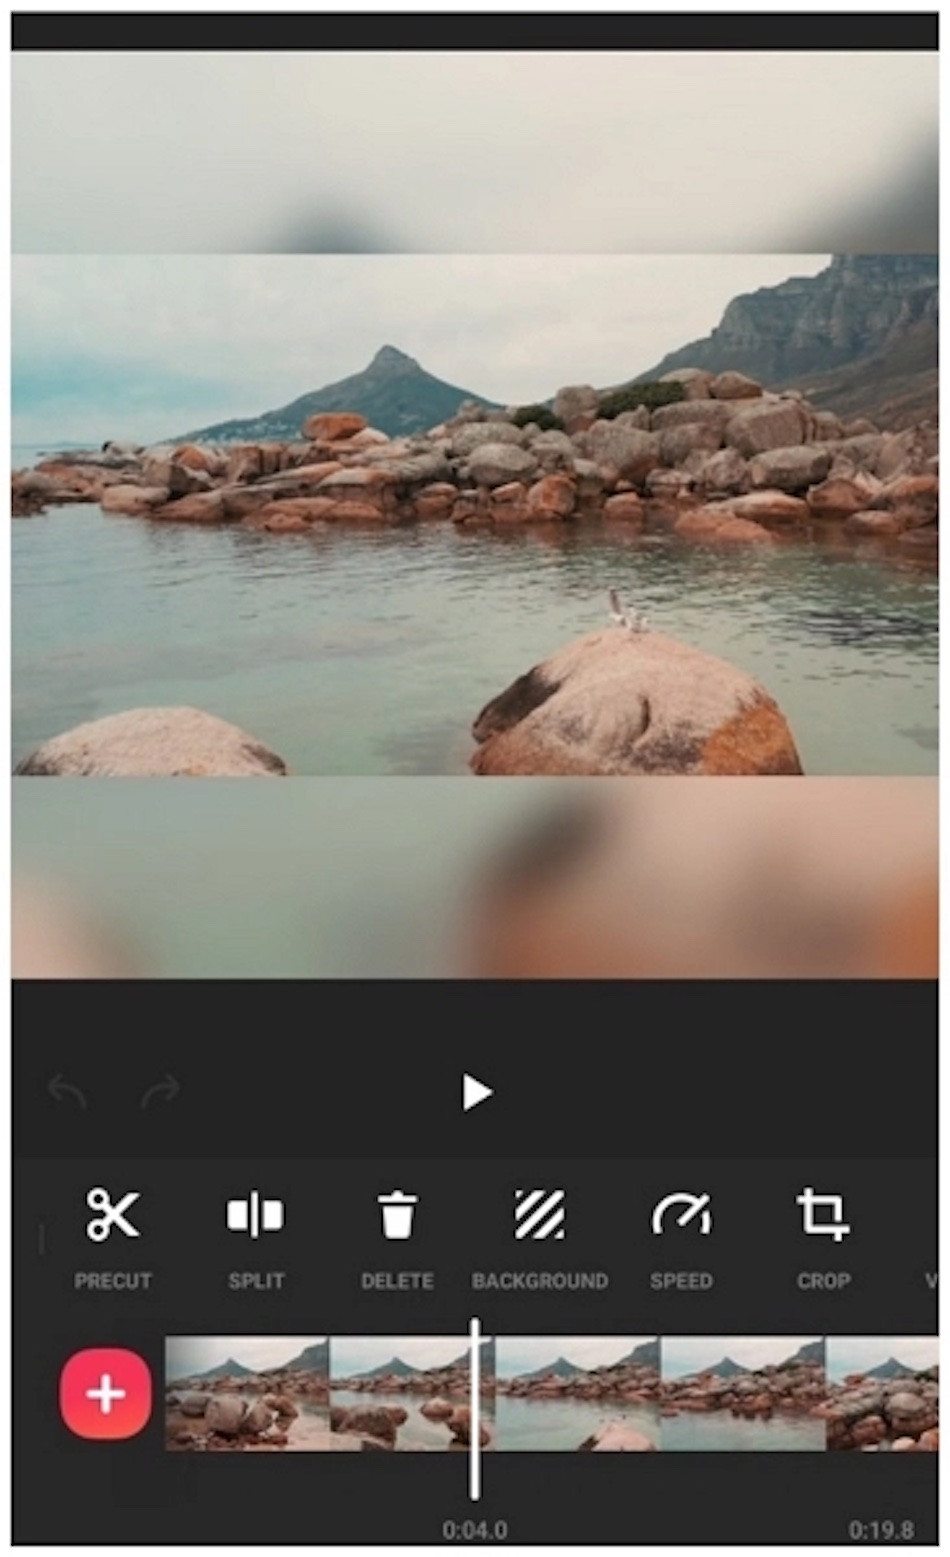 Interfejs aplikacji do edycji wideo InShot pokazuje scenę na plaży i elementy sterujące edycją.